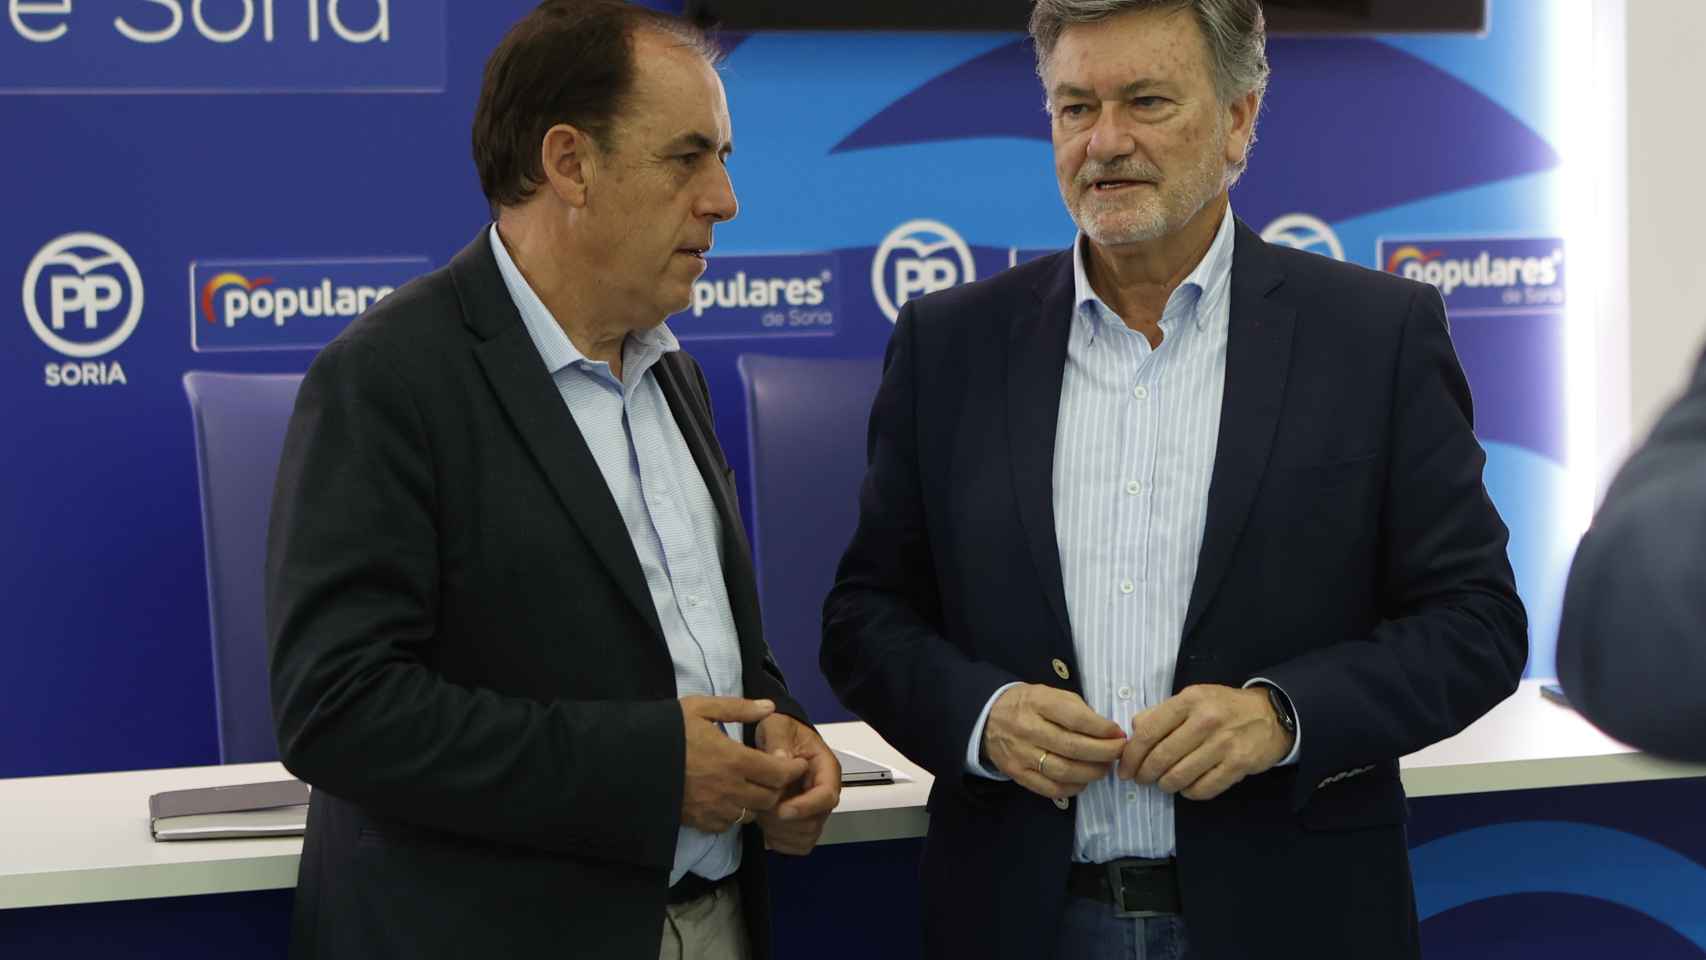 El Partido Popular de Soria celebra una reunión de su Comité de Campaña con la asistencia del secretario autonómico del PP de Castilla y León, Paco Vázquez.